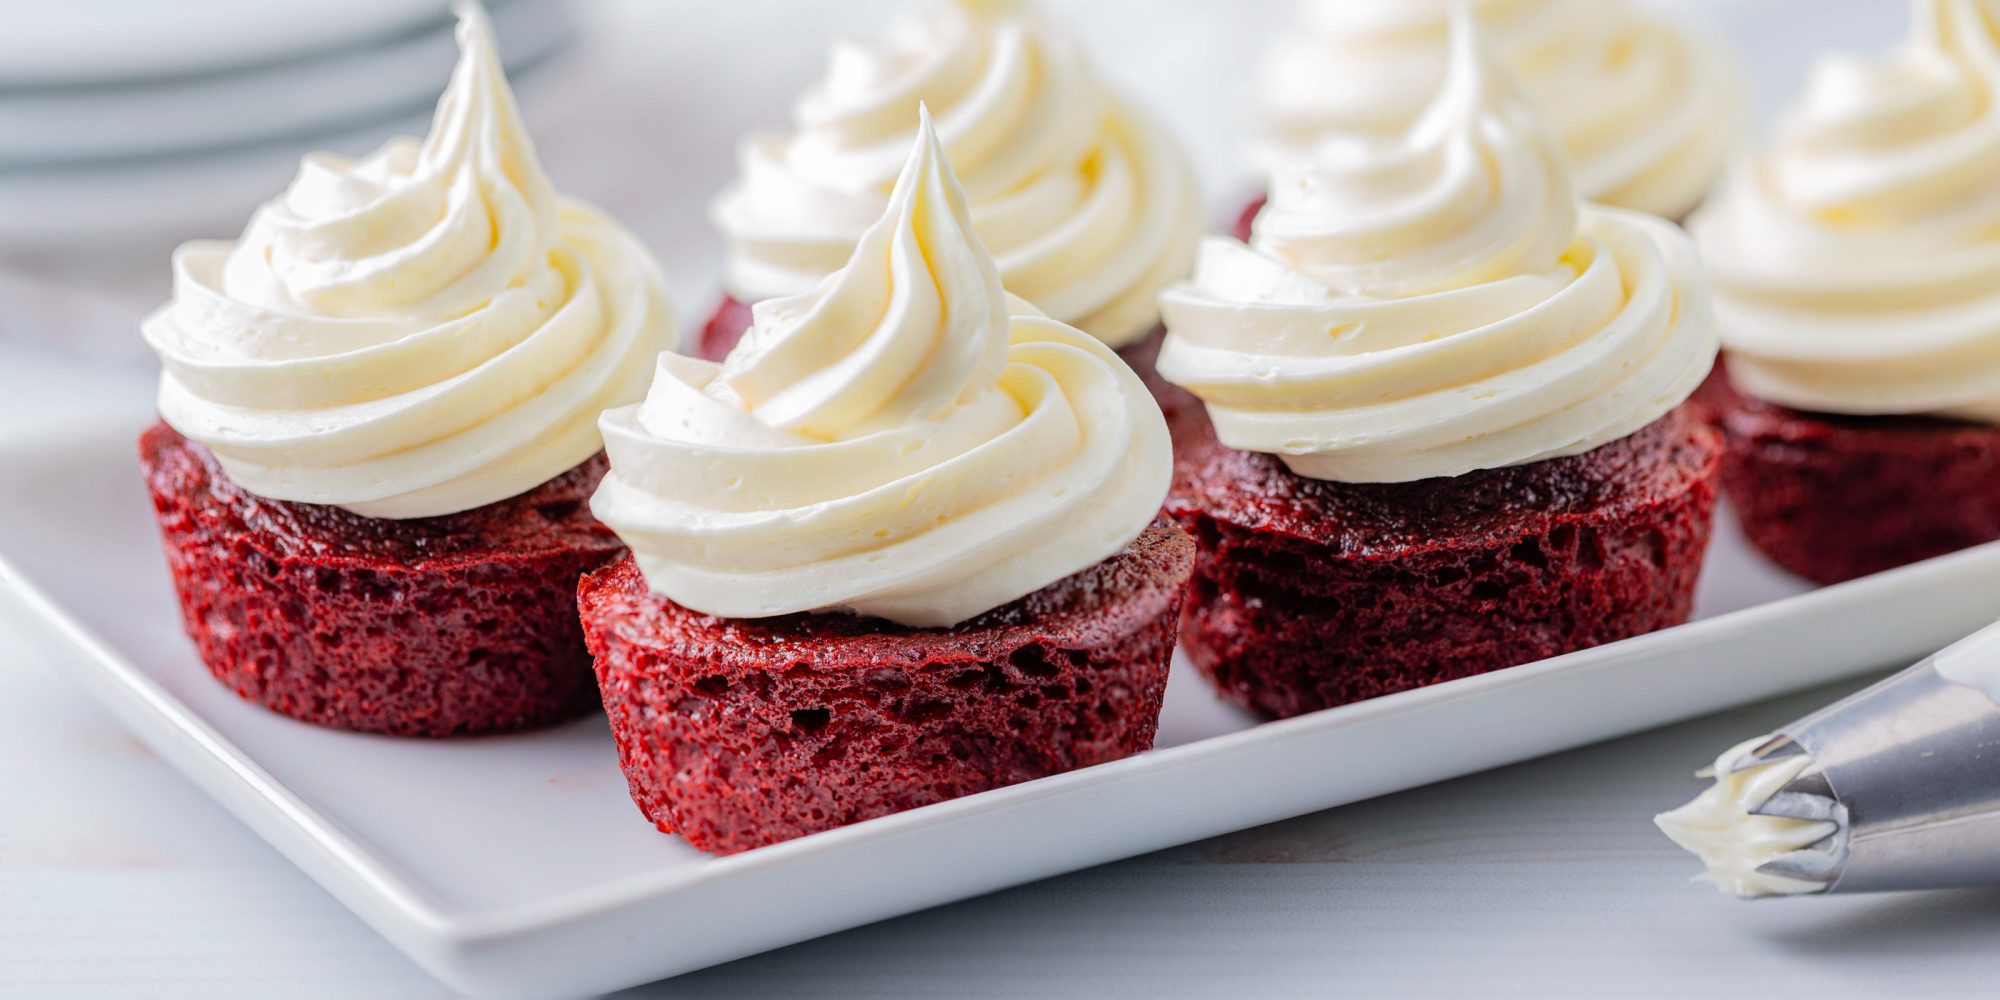 https://www.splenda.com/wp-content/uploads/2020/05/red-velvet-cupcakes-2000x1000.jpg